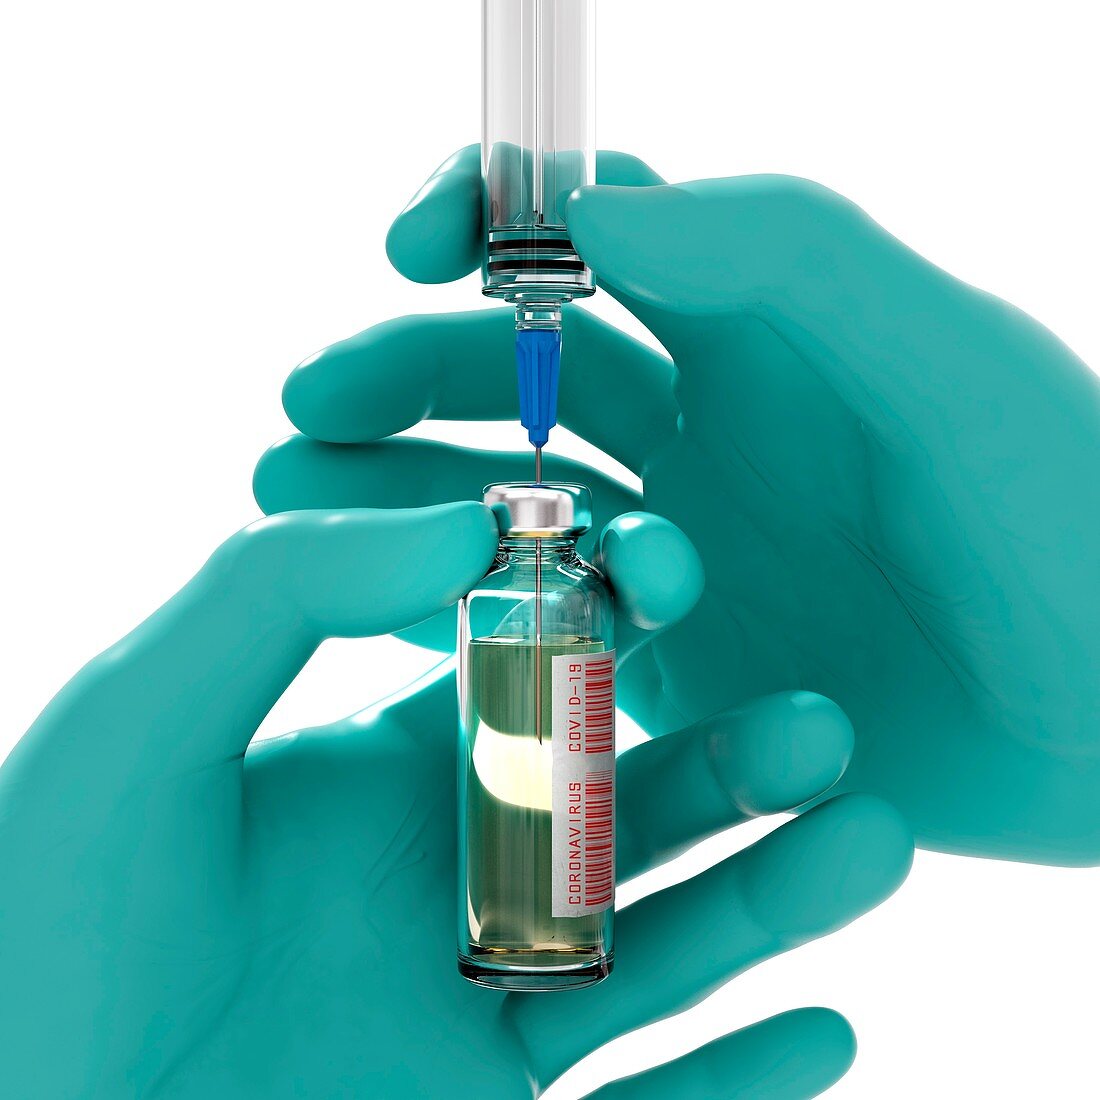 Covid-19 vaccine, illustration